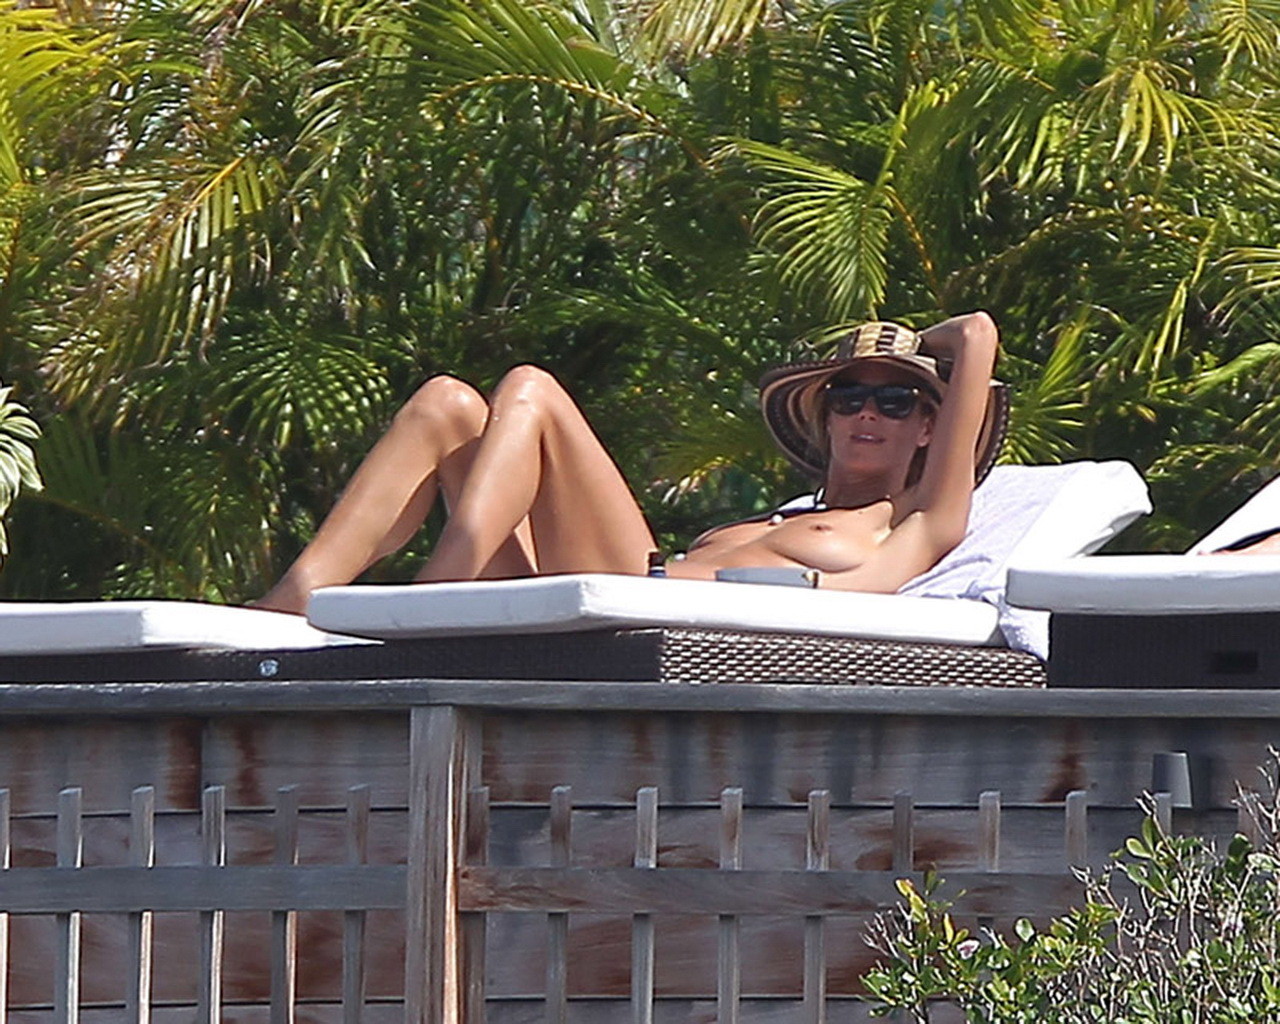 Heidi Klum tanning topless poolside in St Barts #75176315